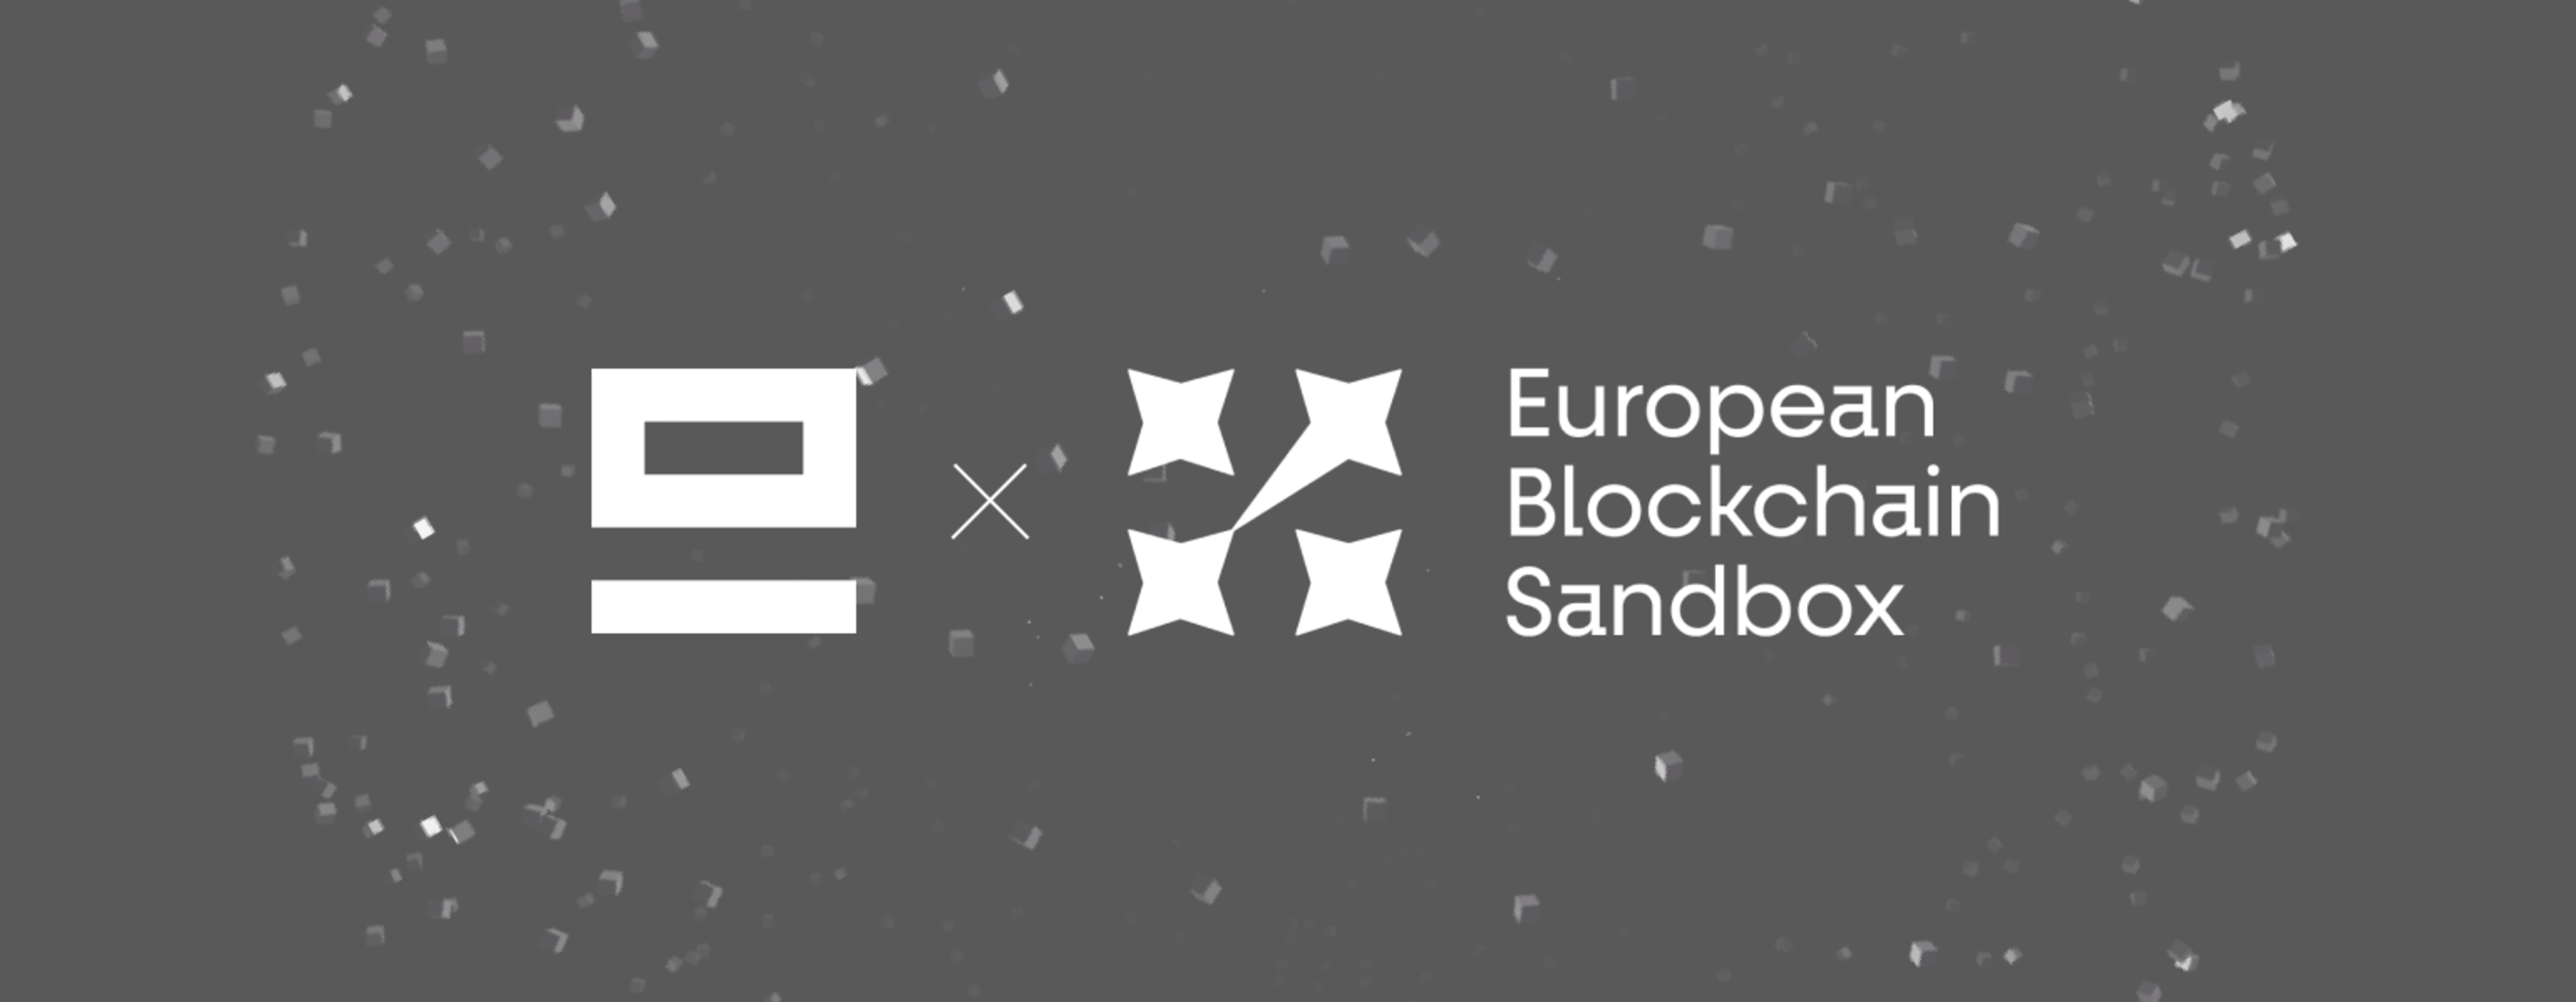 EQ - European Blockchain Sandbox